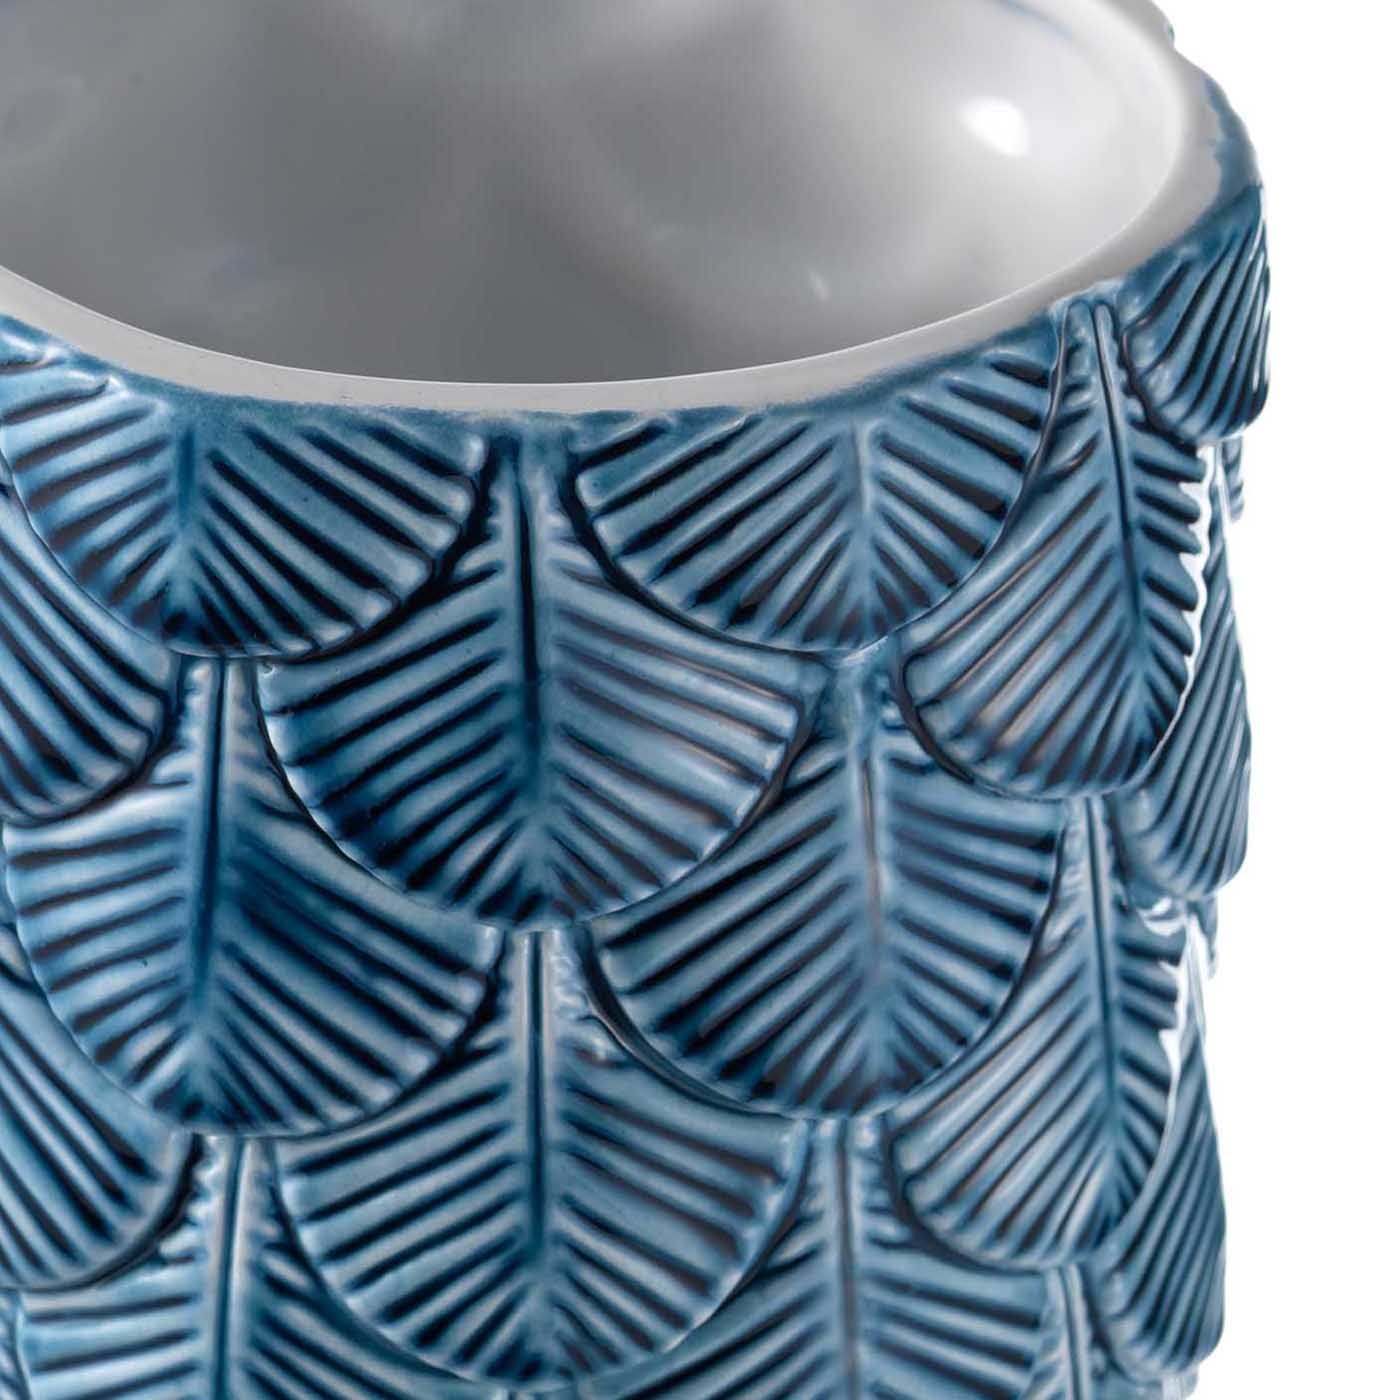 Vase mit weißem und blauem Federkleid - Alternative Ansicht 1